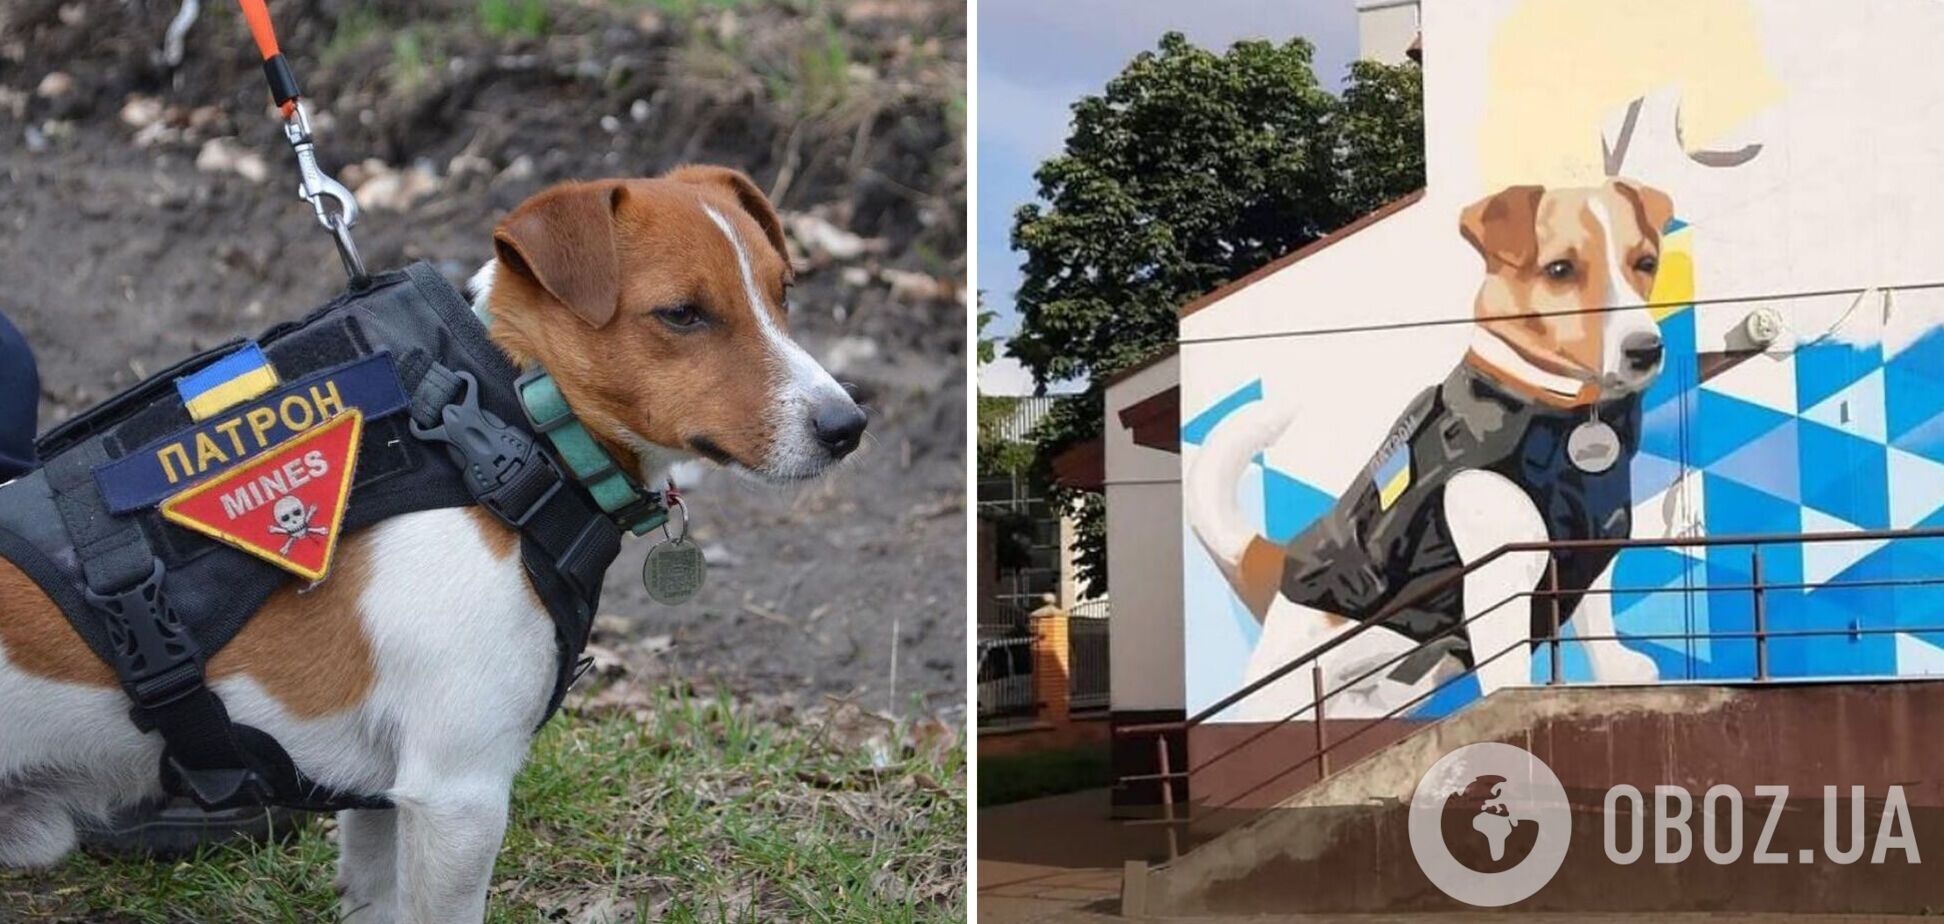 В Киеве появился мурал, посвященный псу-саперу Патрону. Фото